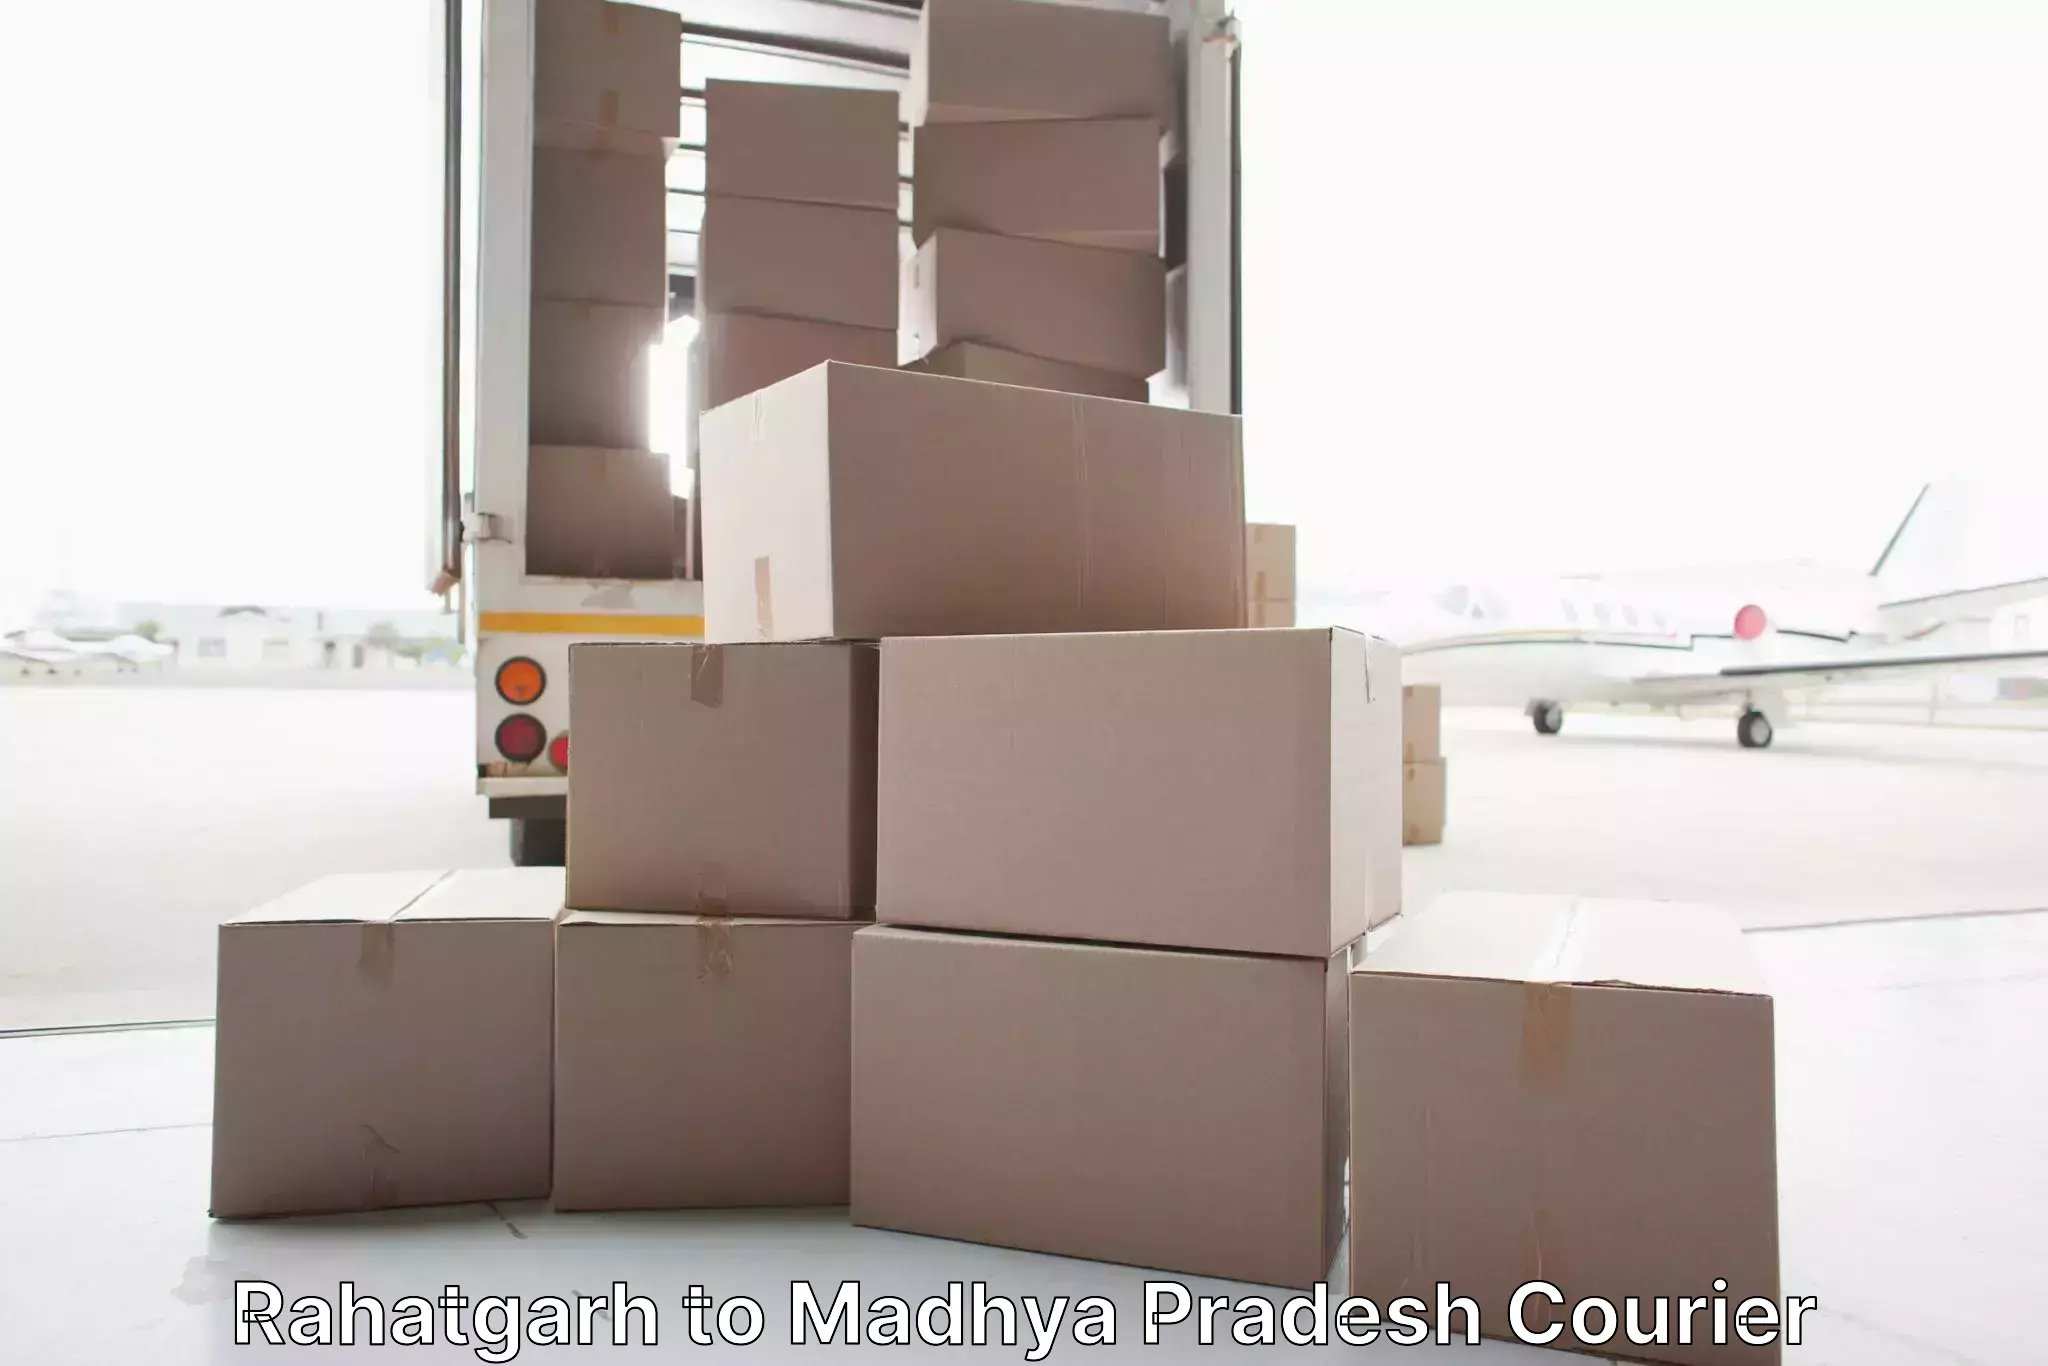 Budget-friendly movers Rahatgarh to Nainpur